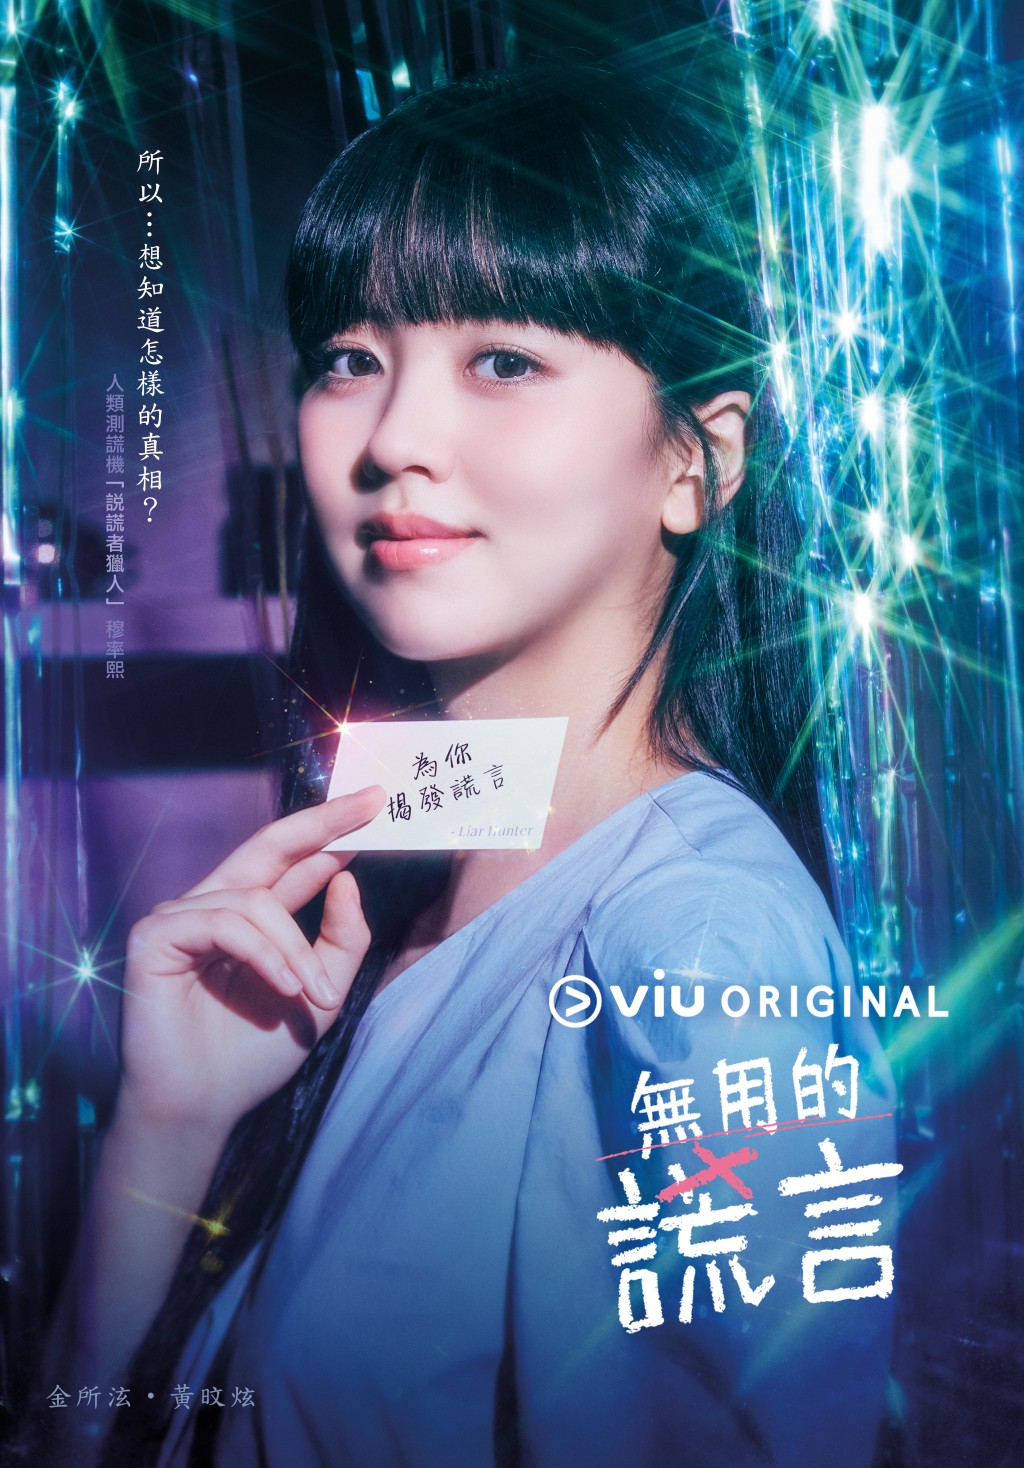 金所泫和黄旼炫携手主演的Viu Original原创韩剧《无用的谎言》本月中迎来大结局。